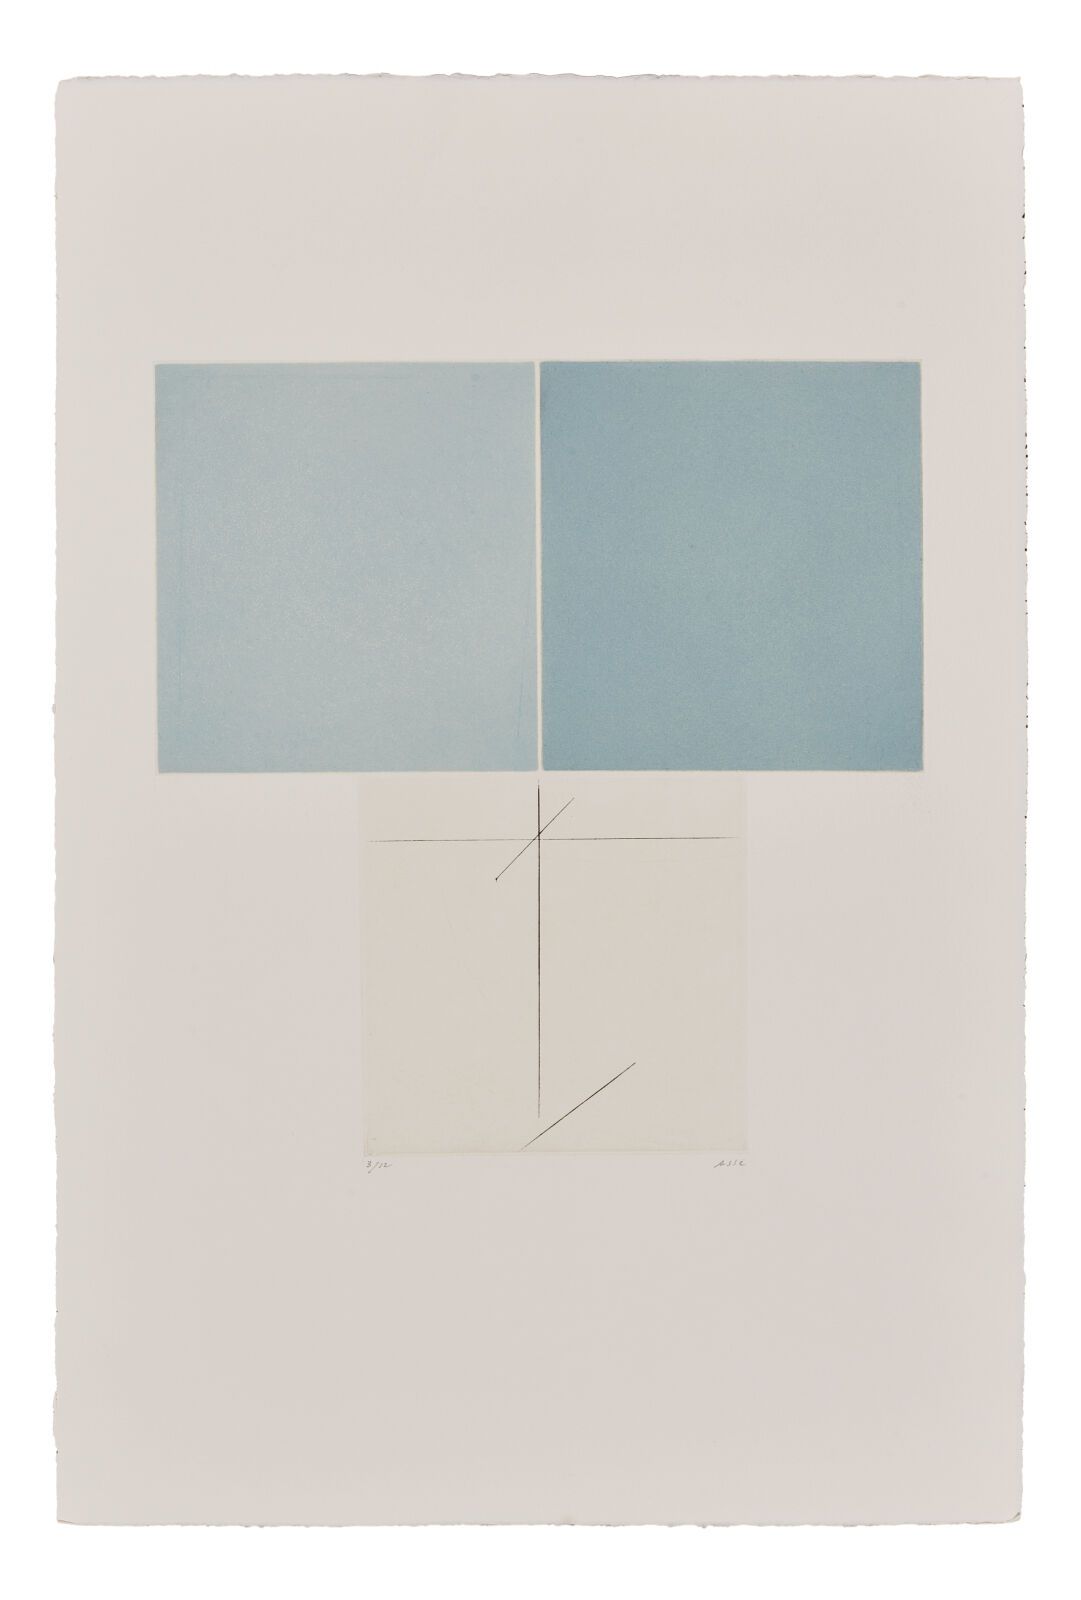 Null 热纳维耶夫-阿瑟（1923-2021）
安克雷1994.干点、水印、錾刻（使用 3 幅并列的铜版画，其中 2 幅以蓝色绘制）。画幅：56.5 x 37&hellip;